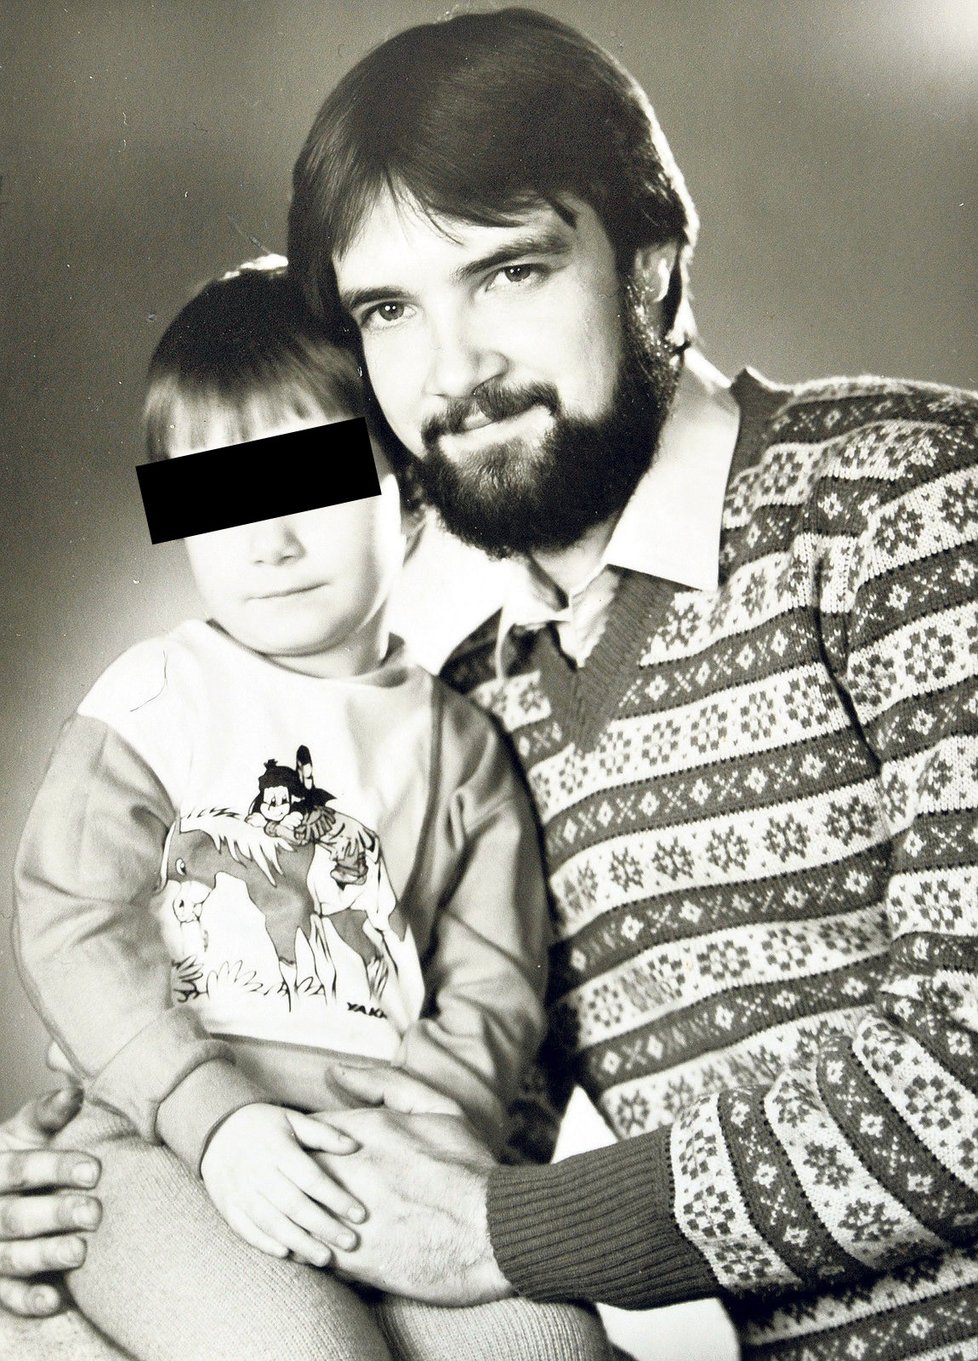 Toto je údajný únosce, německý kamioňák Uwe Reiniker (na straé rodinné fotce s tehdy ještě malou dcerou)